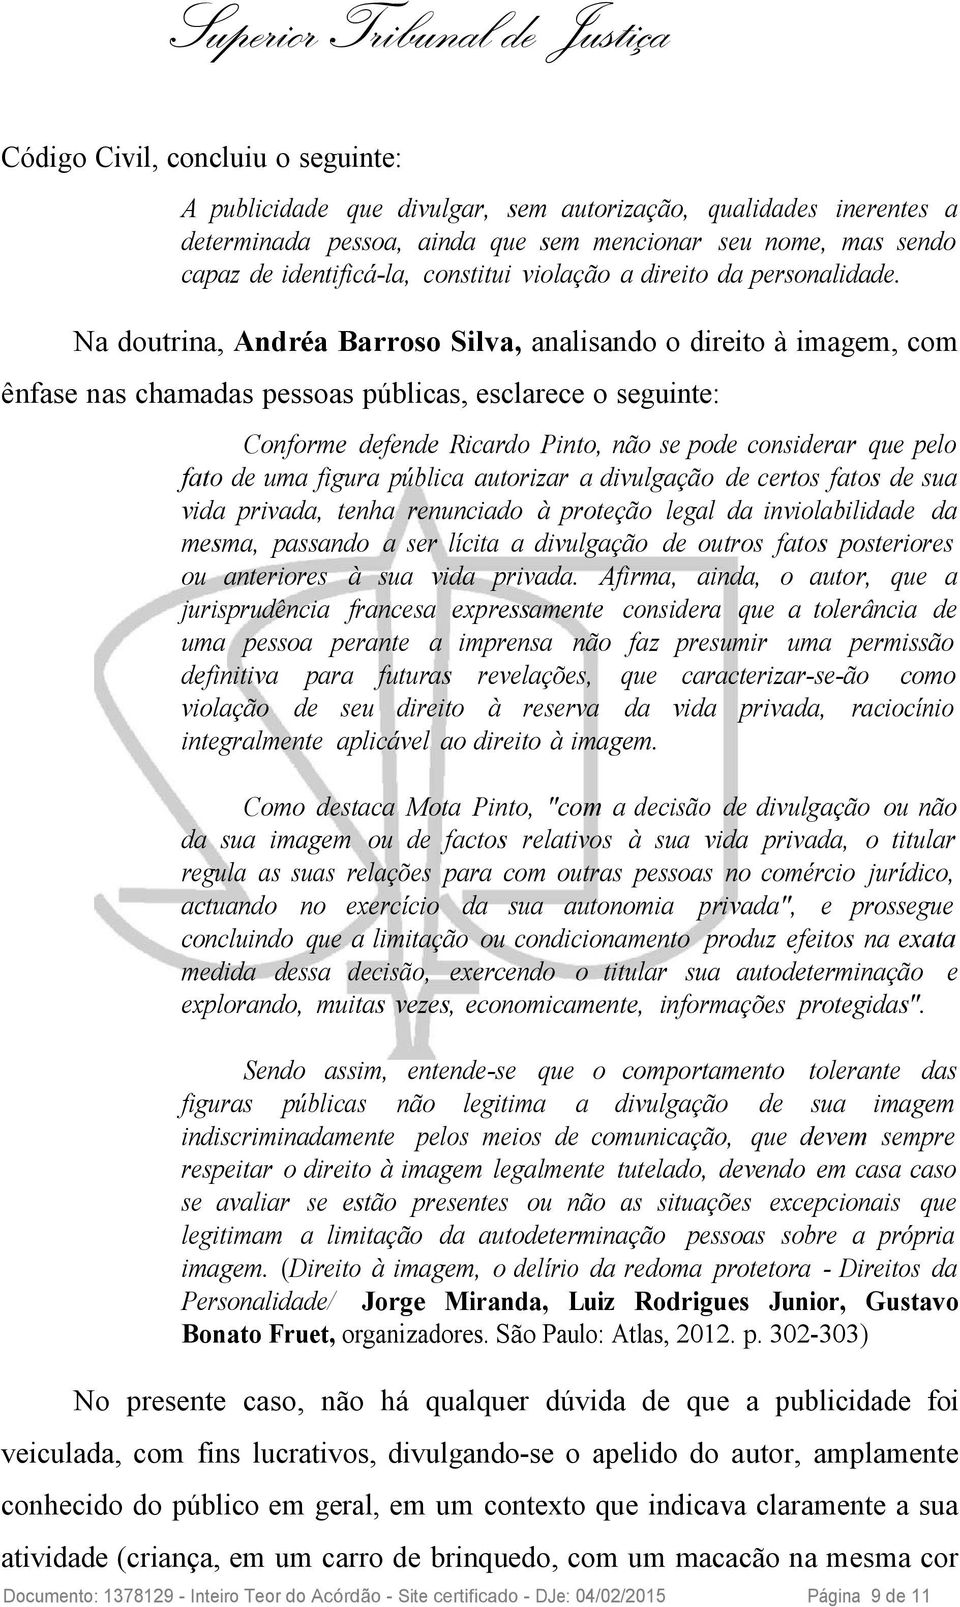 Na doutrina, Andréa Barroso Silva, analisando o direito à imagem, com ênfase nas chamadas pessoas públicas, esclarece o seguinte: Conforme defende Ricardo Pinto, não se pode considerar que pelo fato